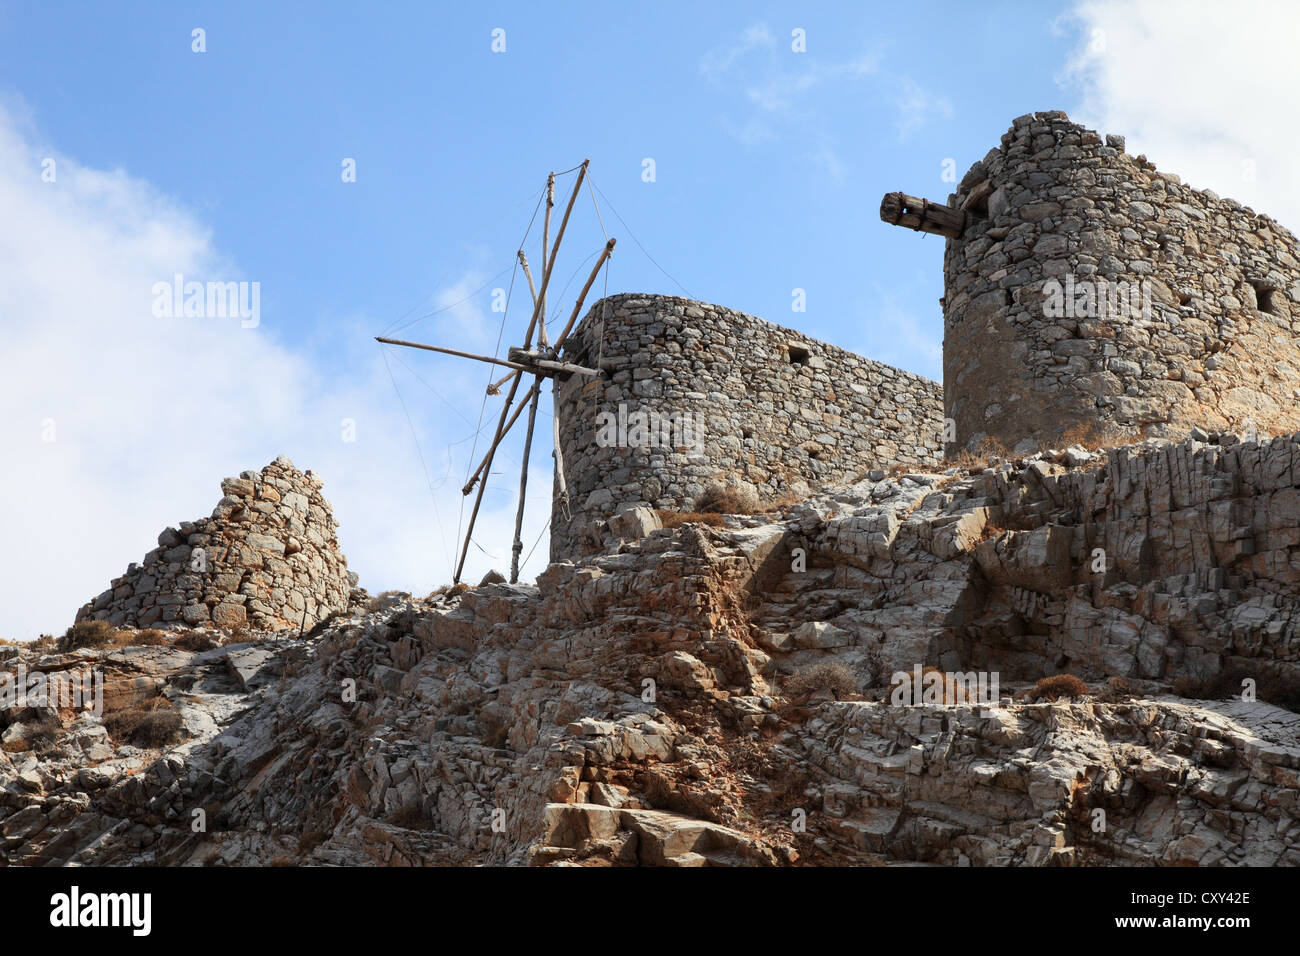 Abbandonati vecchi mulini a vento tradizionali dal Seli Ambelou passano in alto sopra il plateau di Lassithi, Creta, Grecia Foto Stock